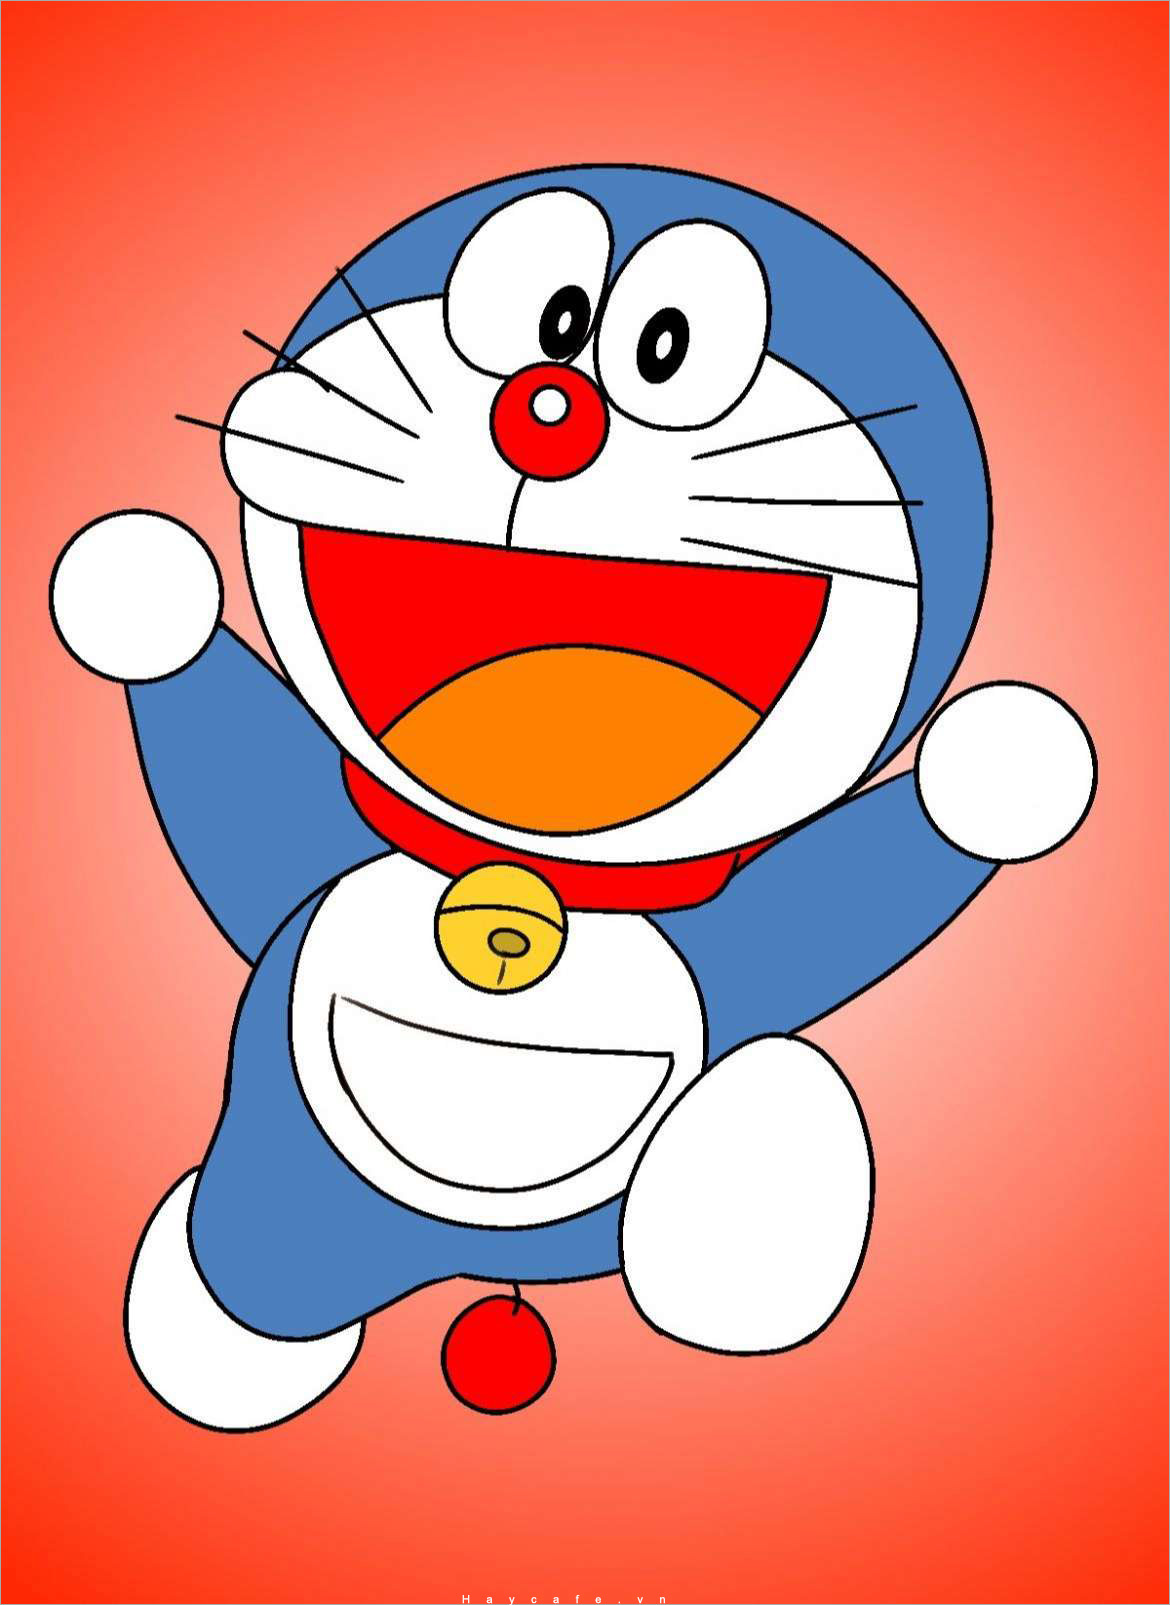 Xem Hơn 100 Ảnh Về Hình Vẽ Doraemon Cute Đơn Giản - Daotaonec